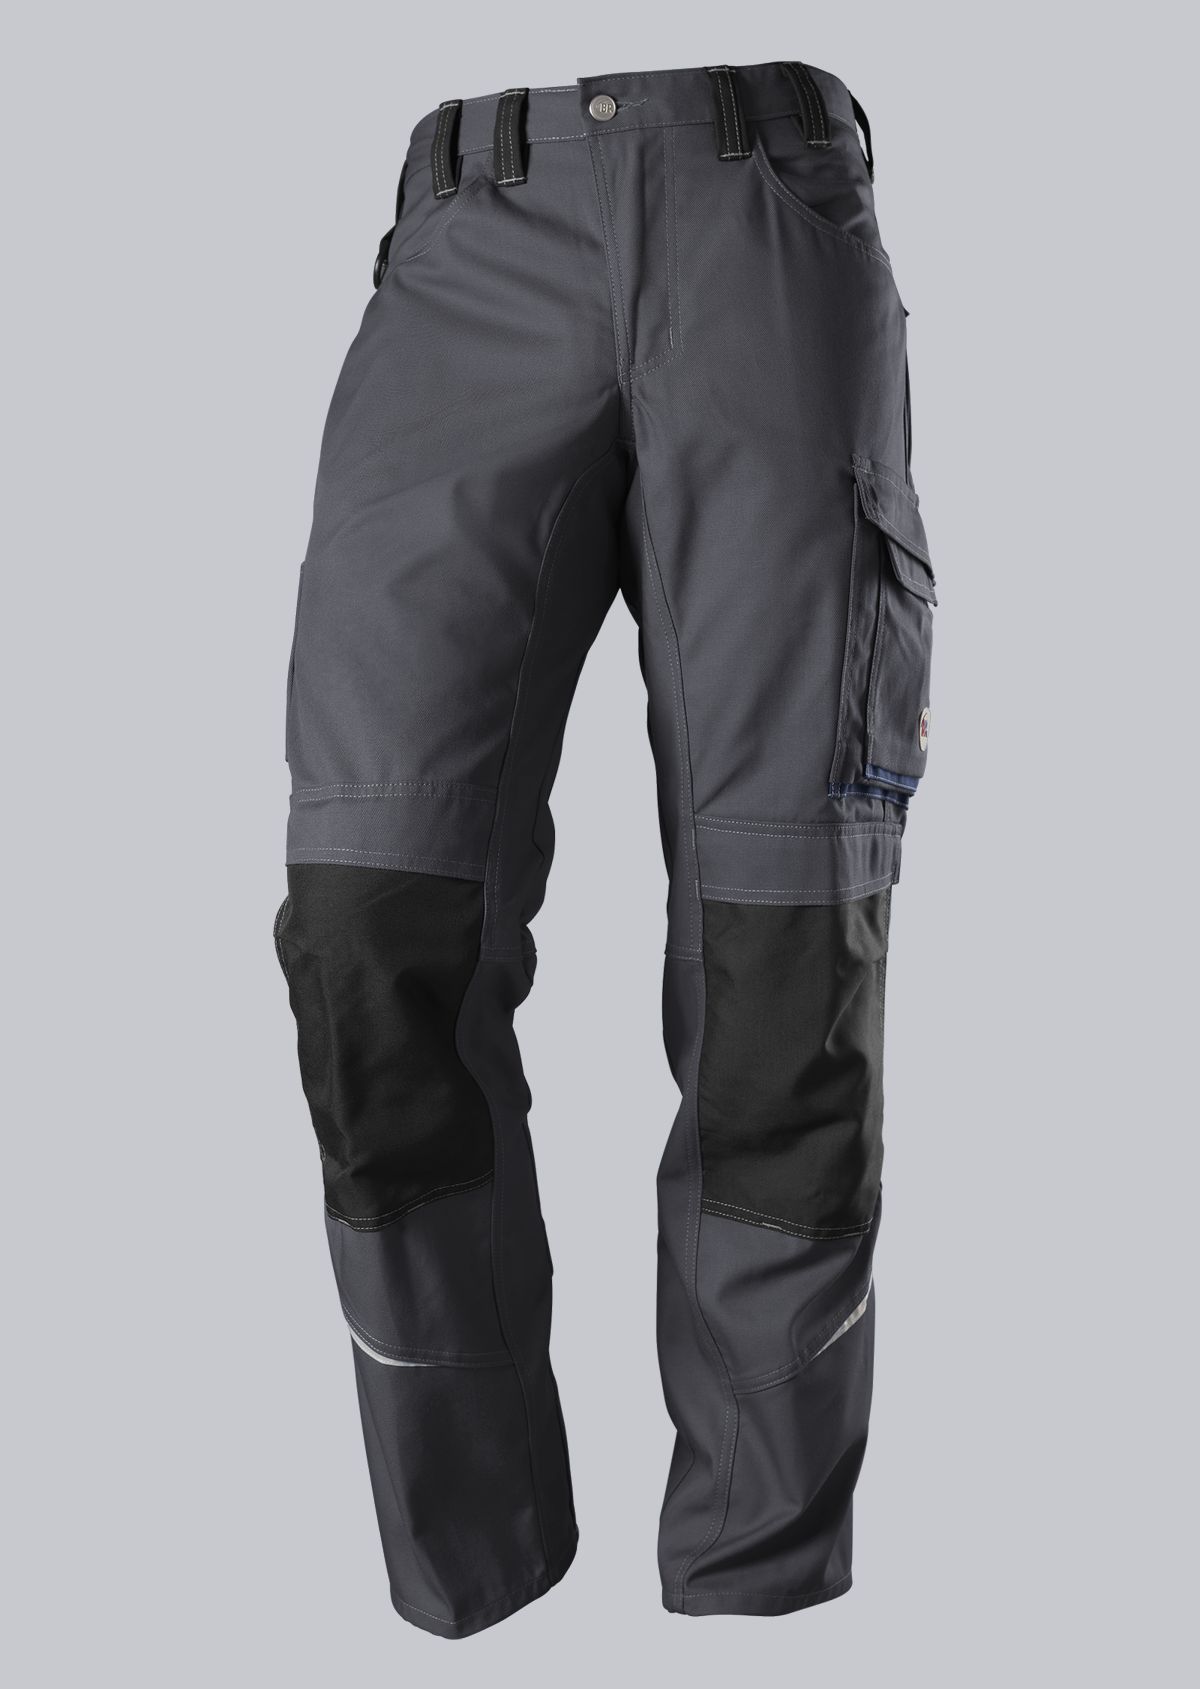 BP® Komfort-Arbeitshose mit Reflex und Kniepolstertaschen